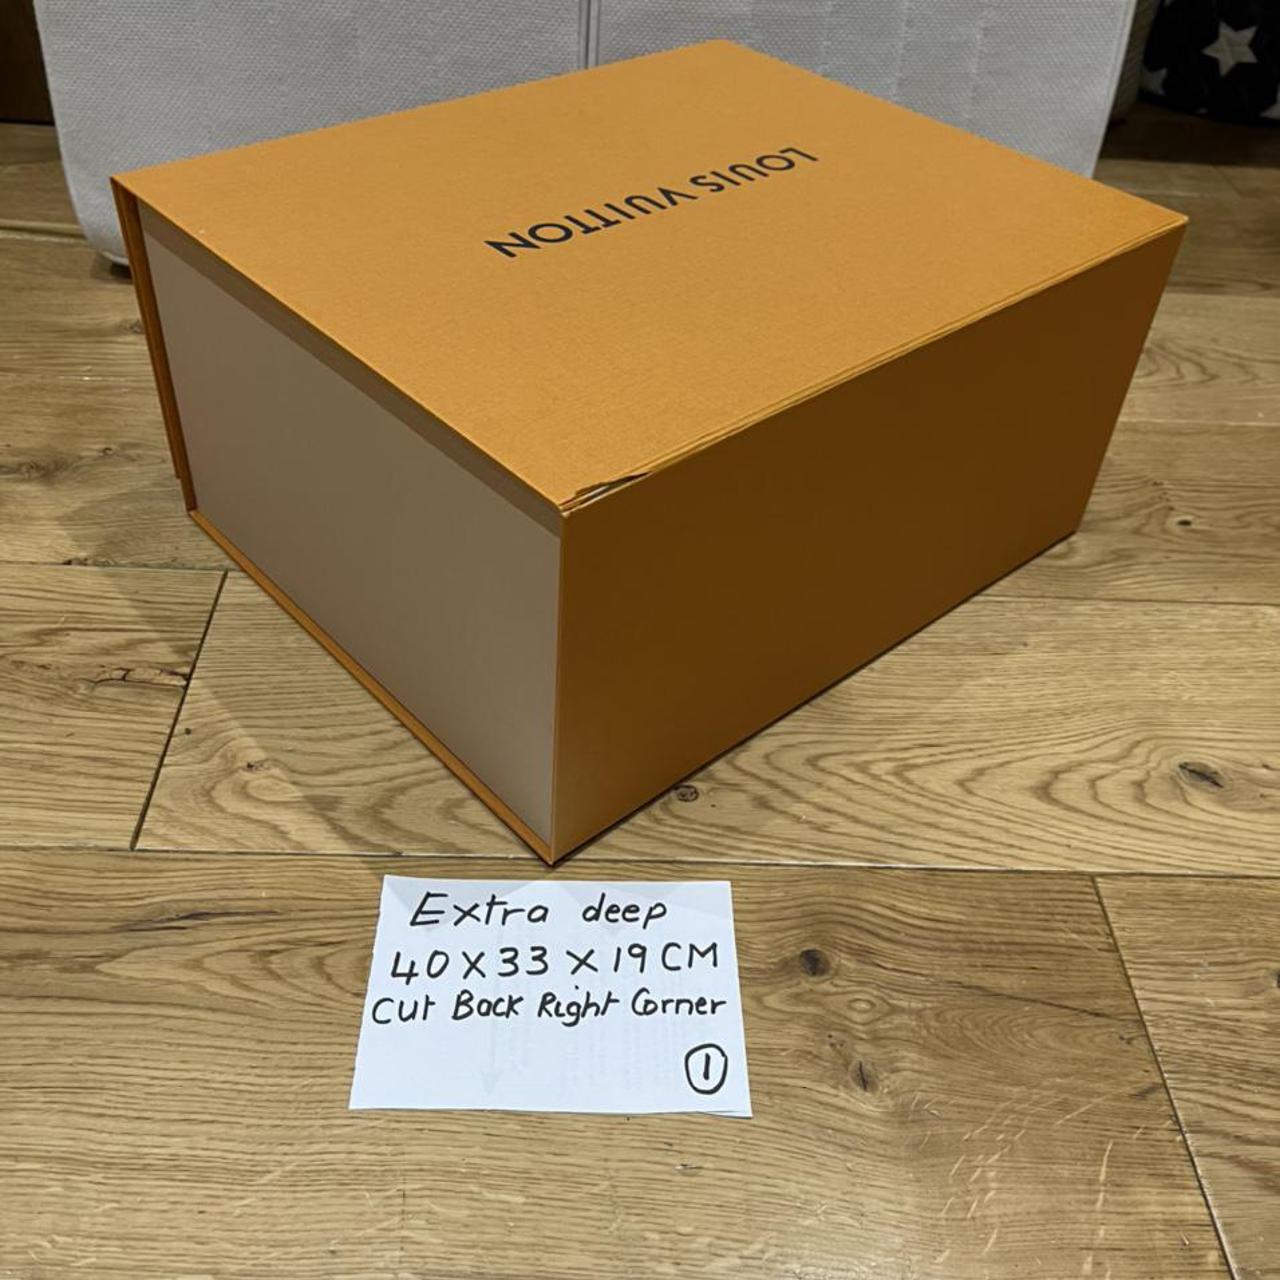 Authentic Louis Vuitton Magnetic Box Great - Depop